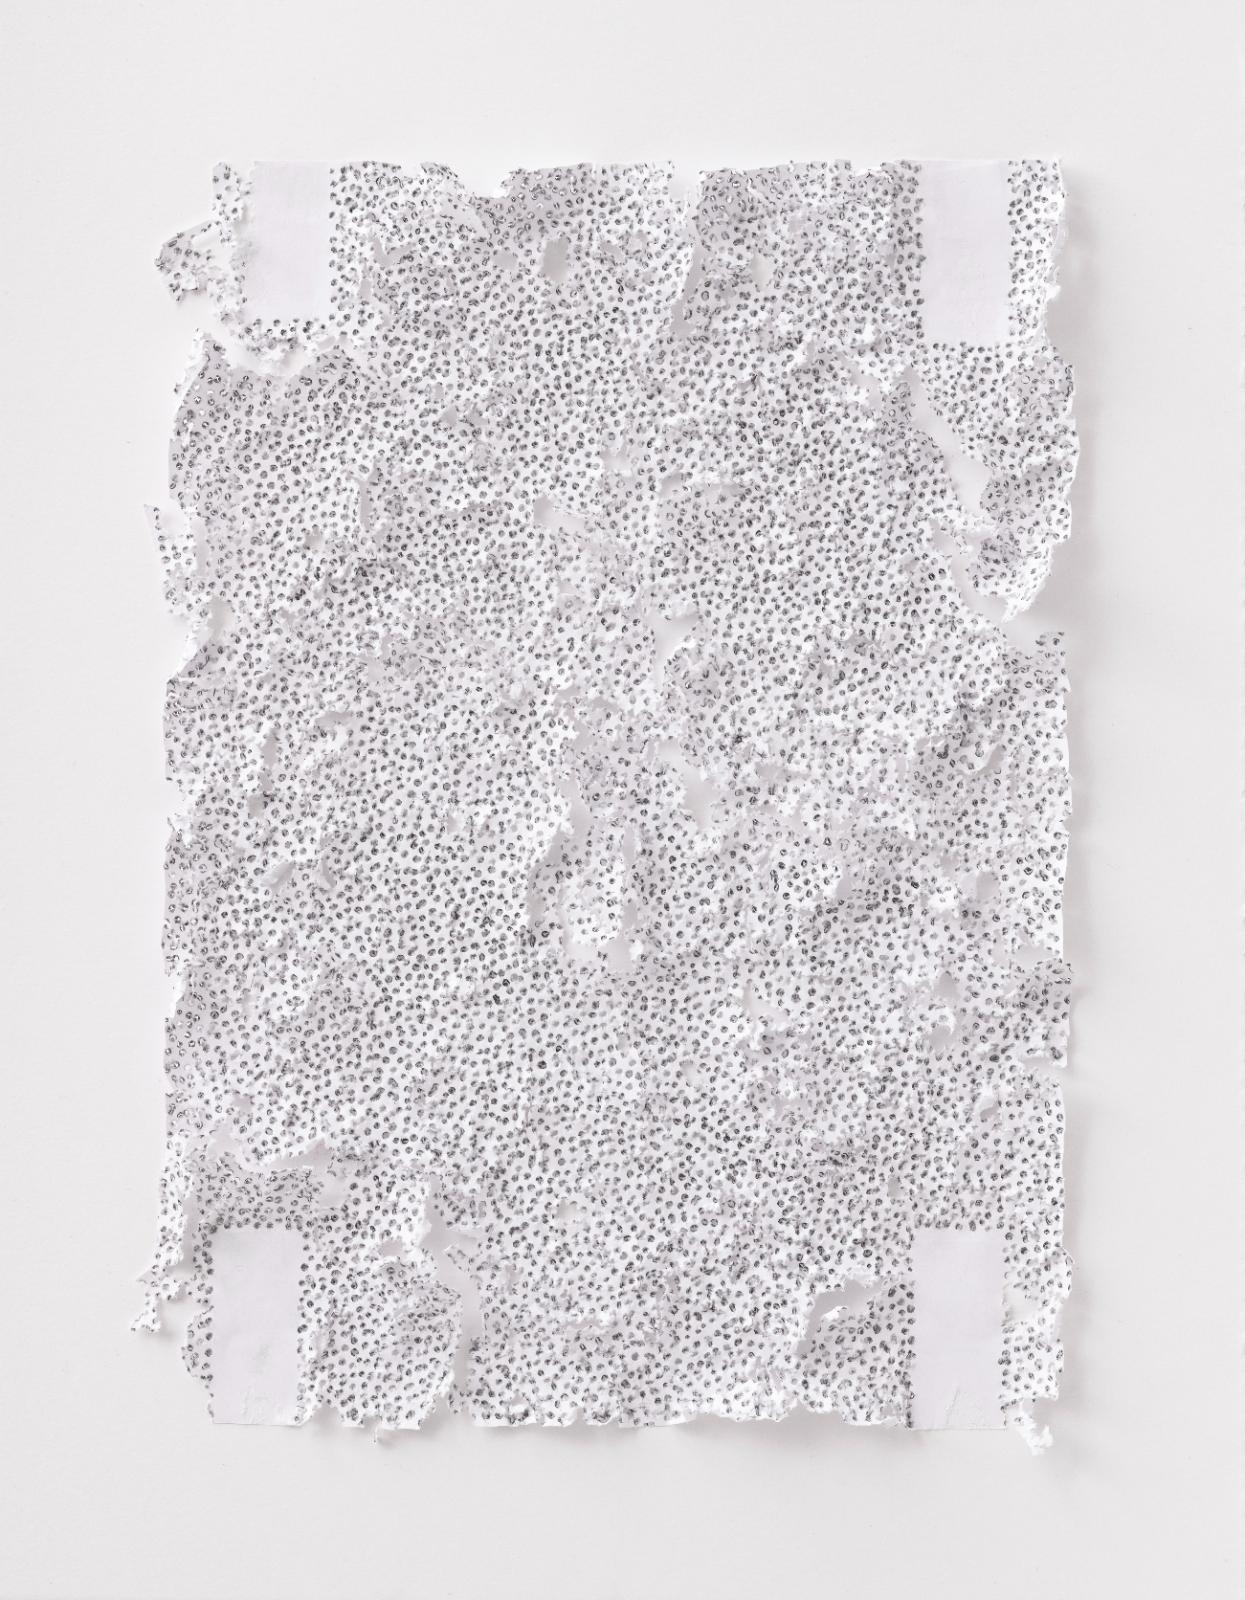 Martin Bruno Schmid, Bleistiftspitze in Papier #3, 2020, Bleistift in Papier, 41 × 31 cm, Preis auf Anfrage